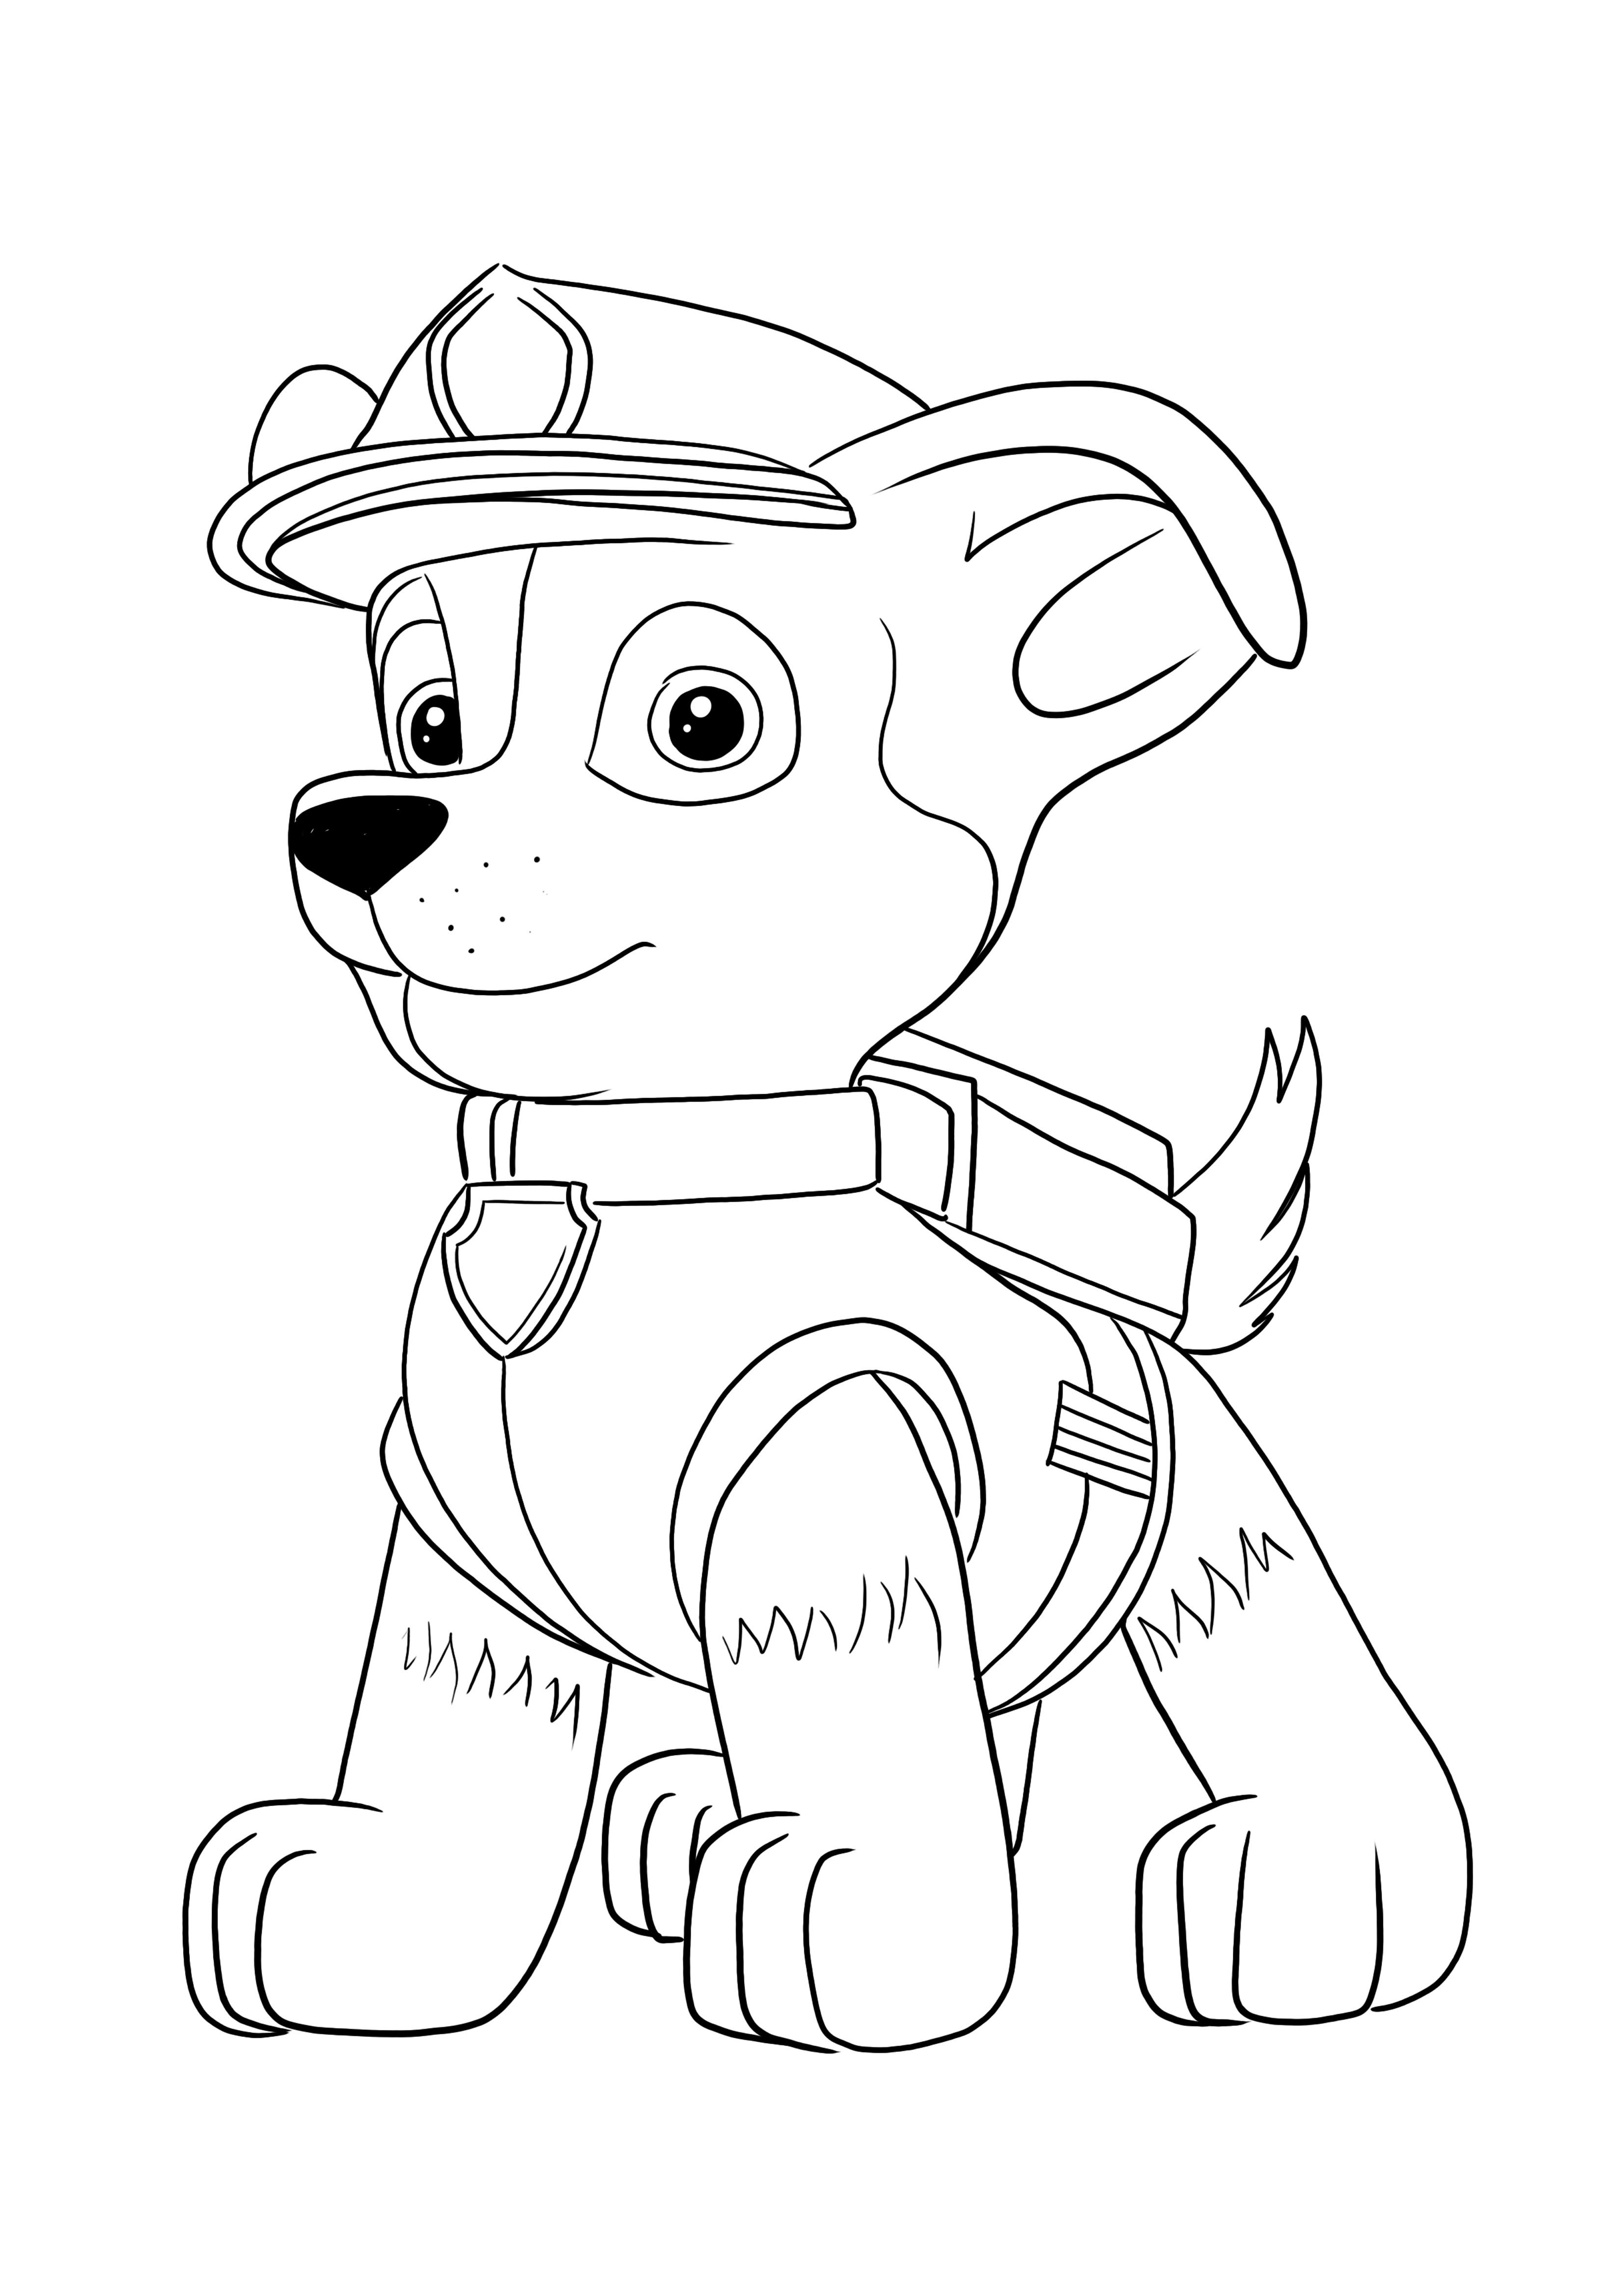 Imprimable gratuit de Chase-le chien policier sérieux pour colorier et s'amuser